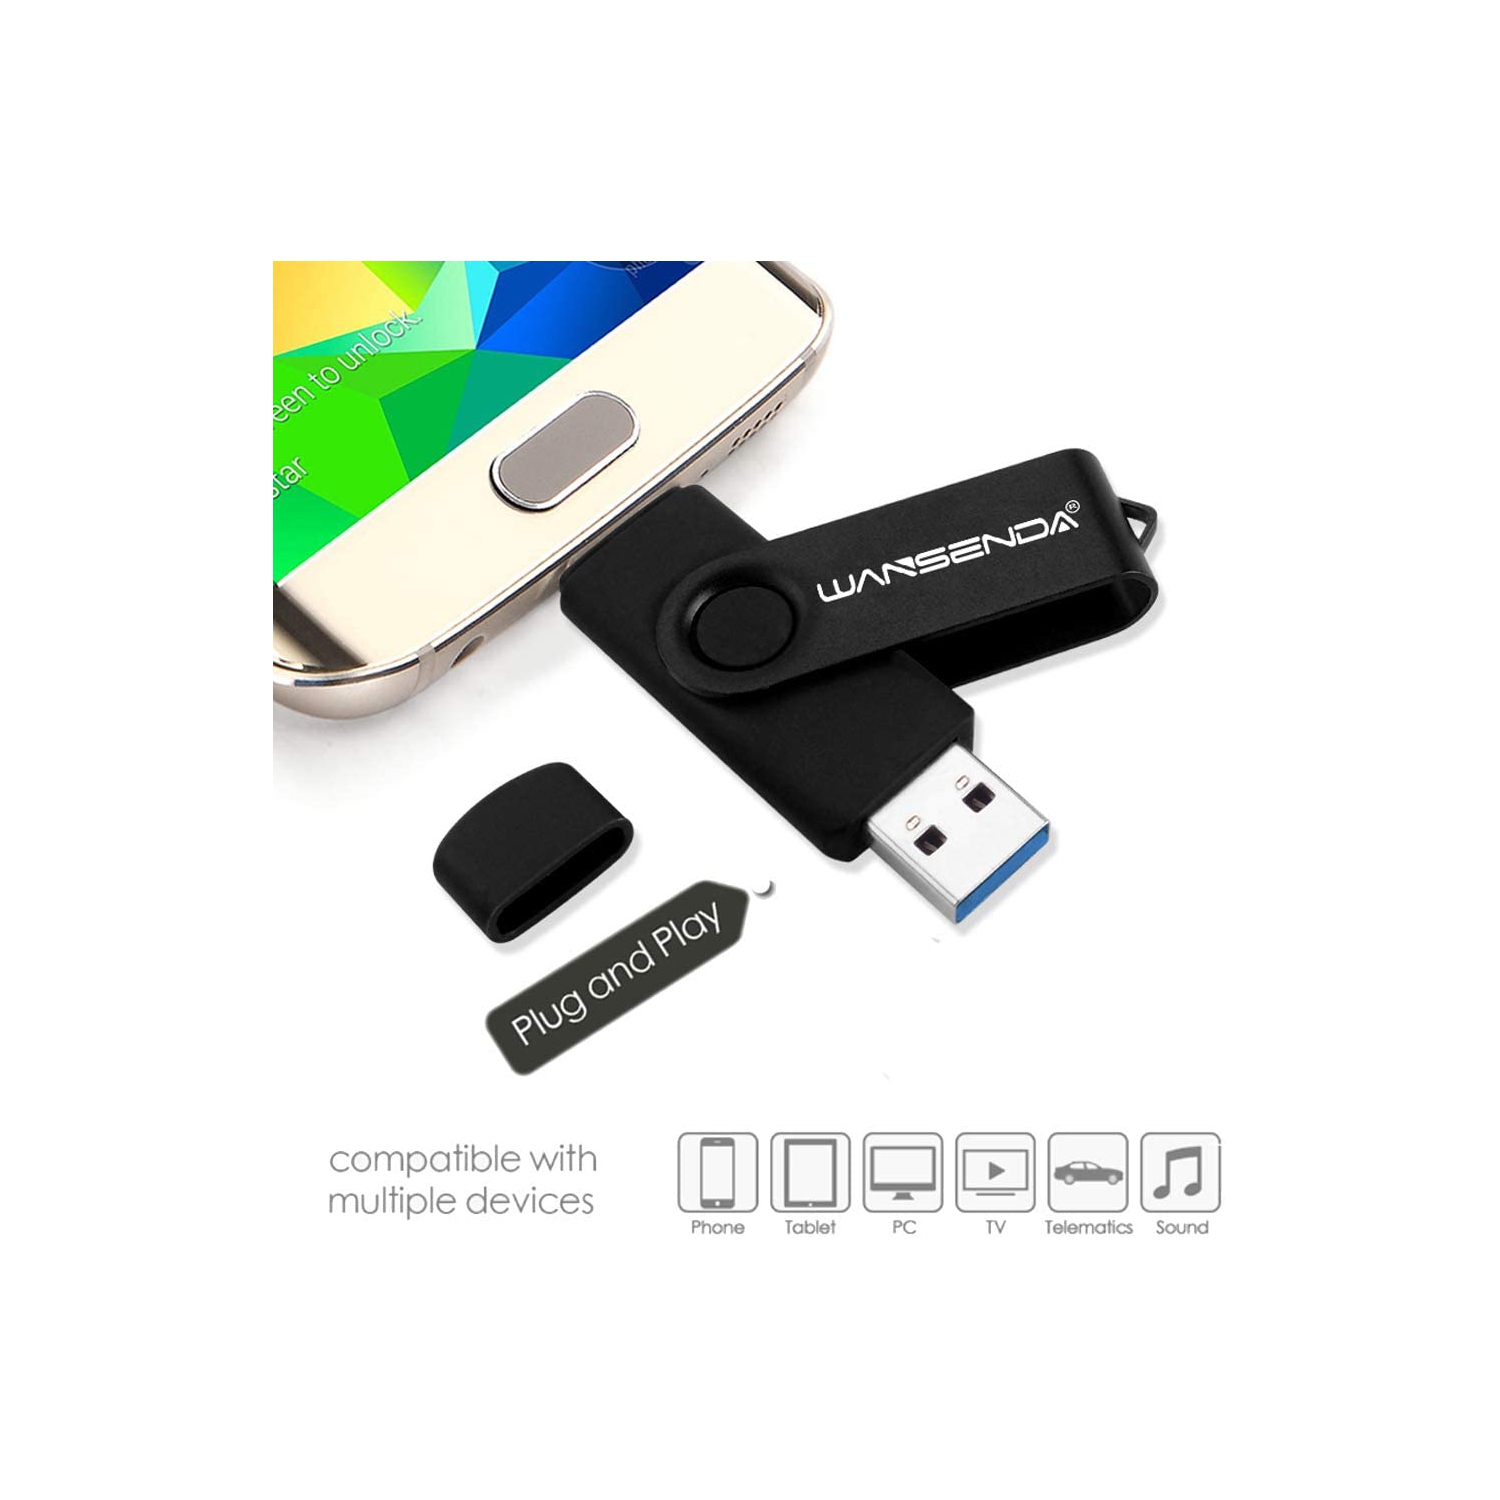 Cle USB 32 GO 3.0, POHOVE OTG Clé USB C 32 GO 2 en 1 Type C USB 3.0 Pen  Drive 32gb Imperméable Clef USB 32go pour Huawei, Xiaomi, Oneplus,  Smartphones Doté